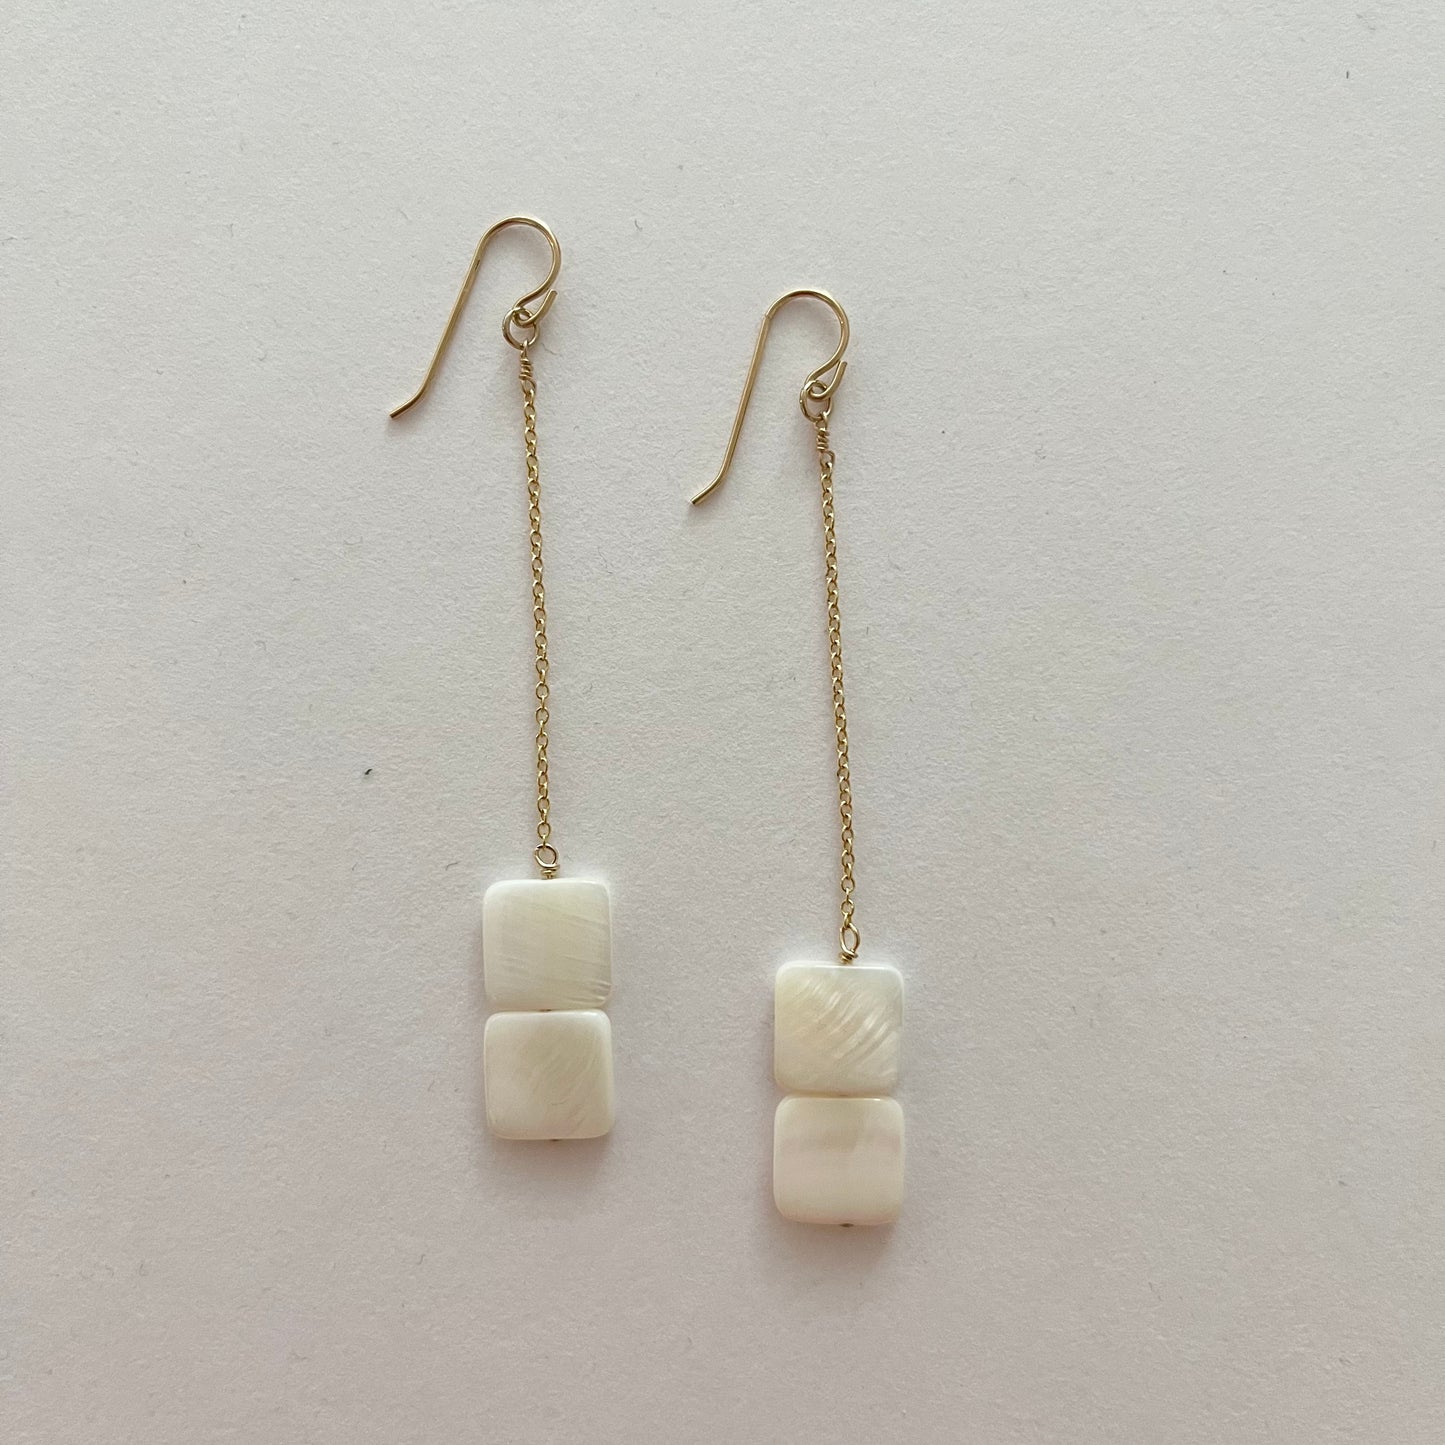 Desert Moon Design • Double Square Shell Chain Dangle Earrings • 14K Gold Fill